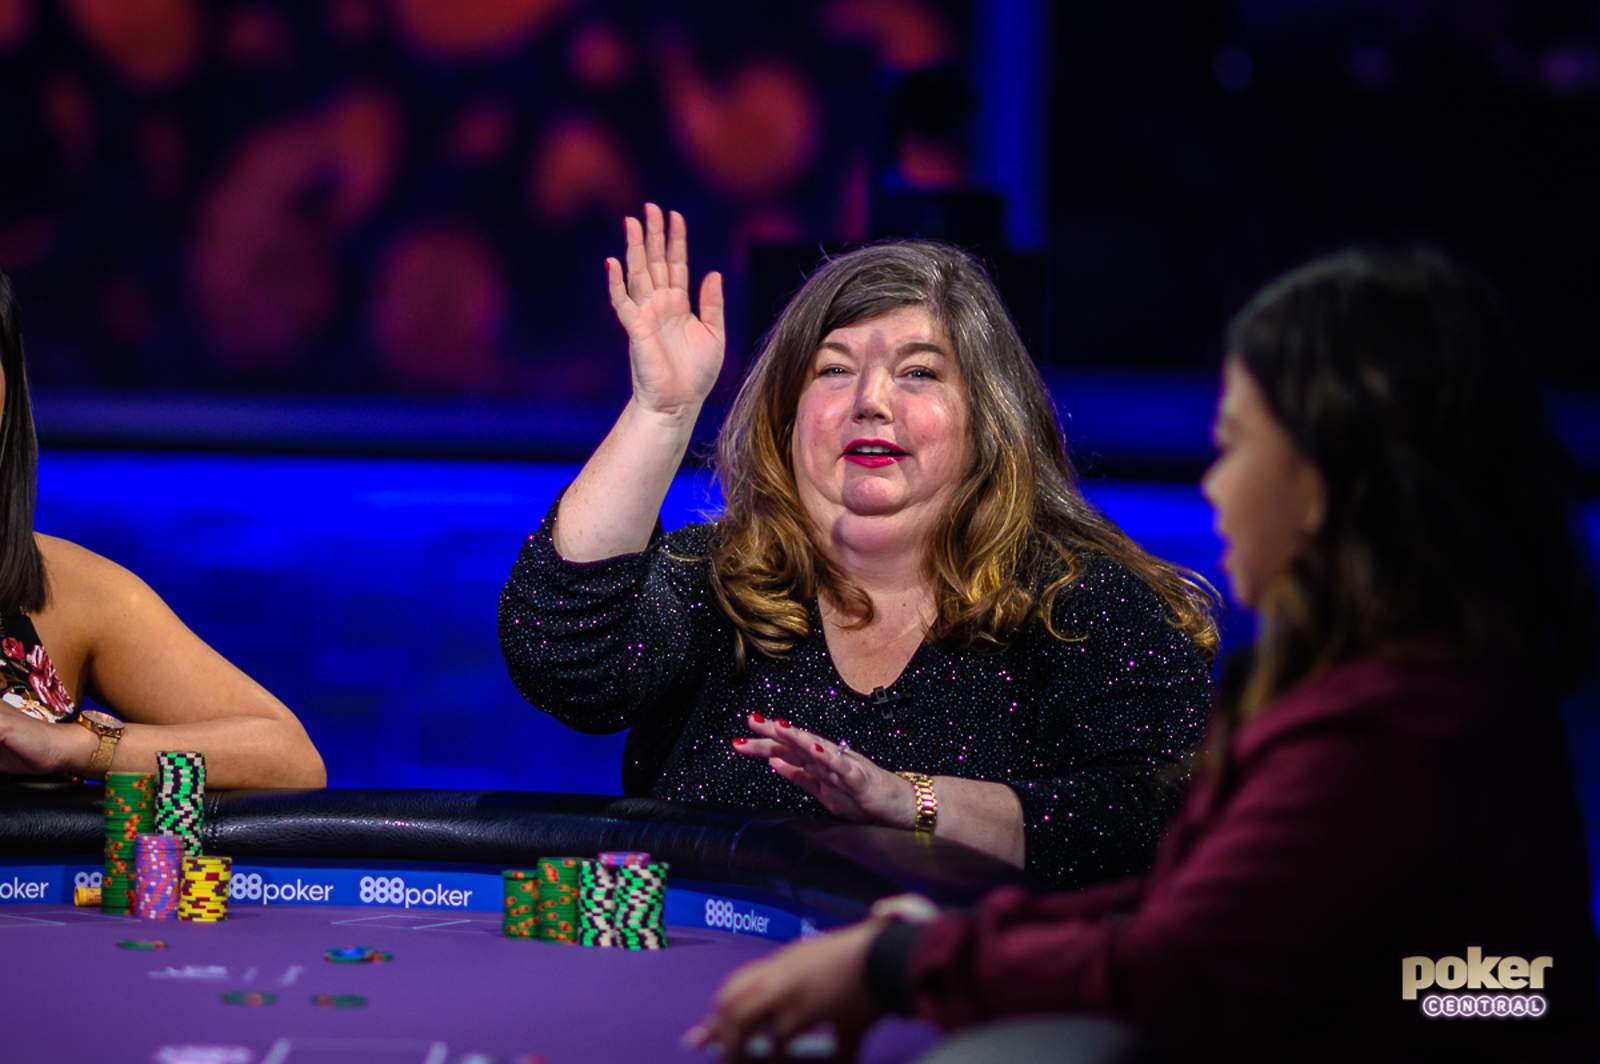 Loud, Rowdy, Blunt, and Full of Life: Denise Pratt Takes Over the PokerGO Studio